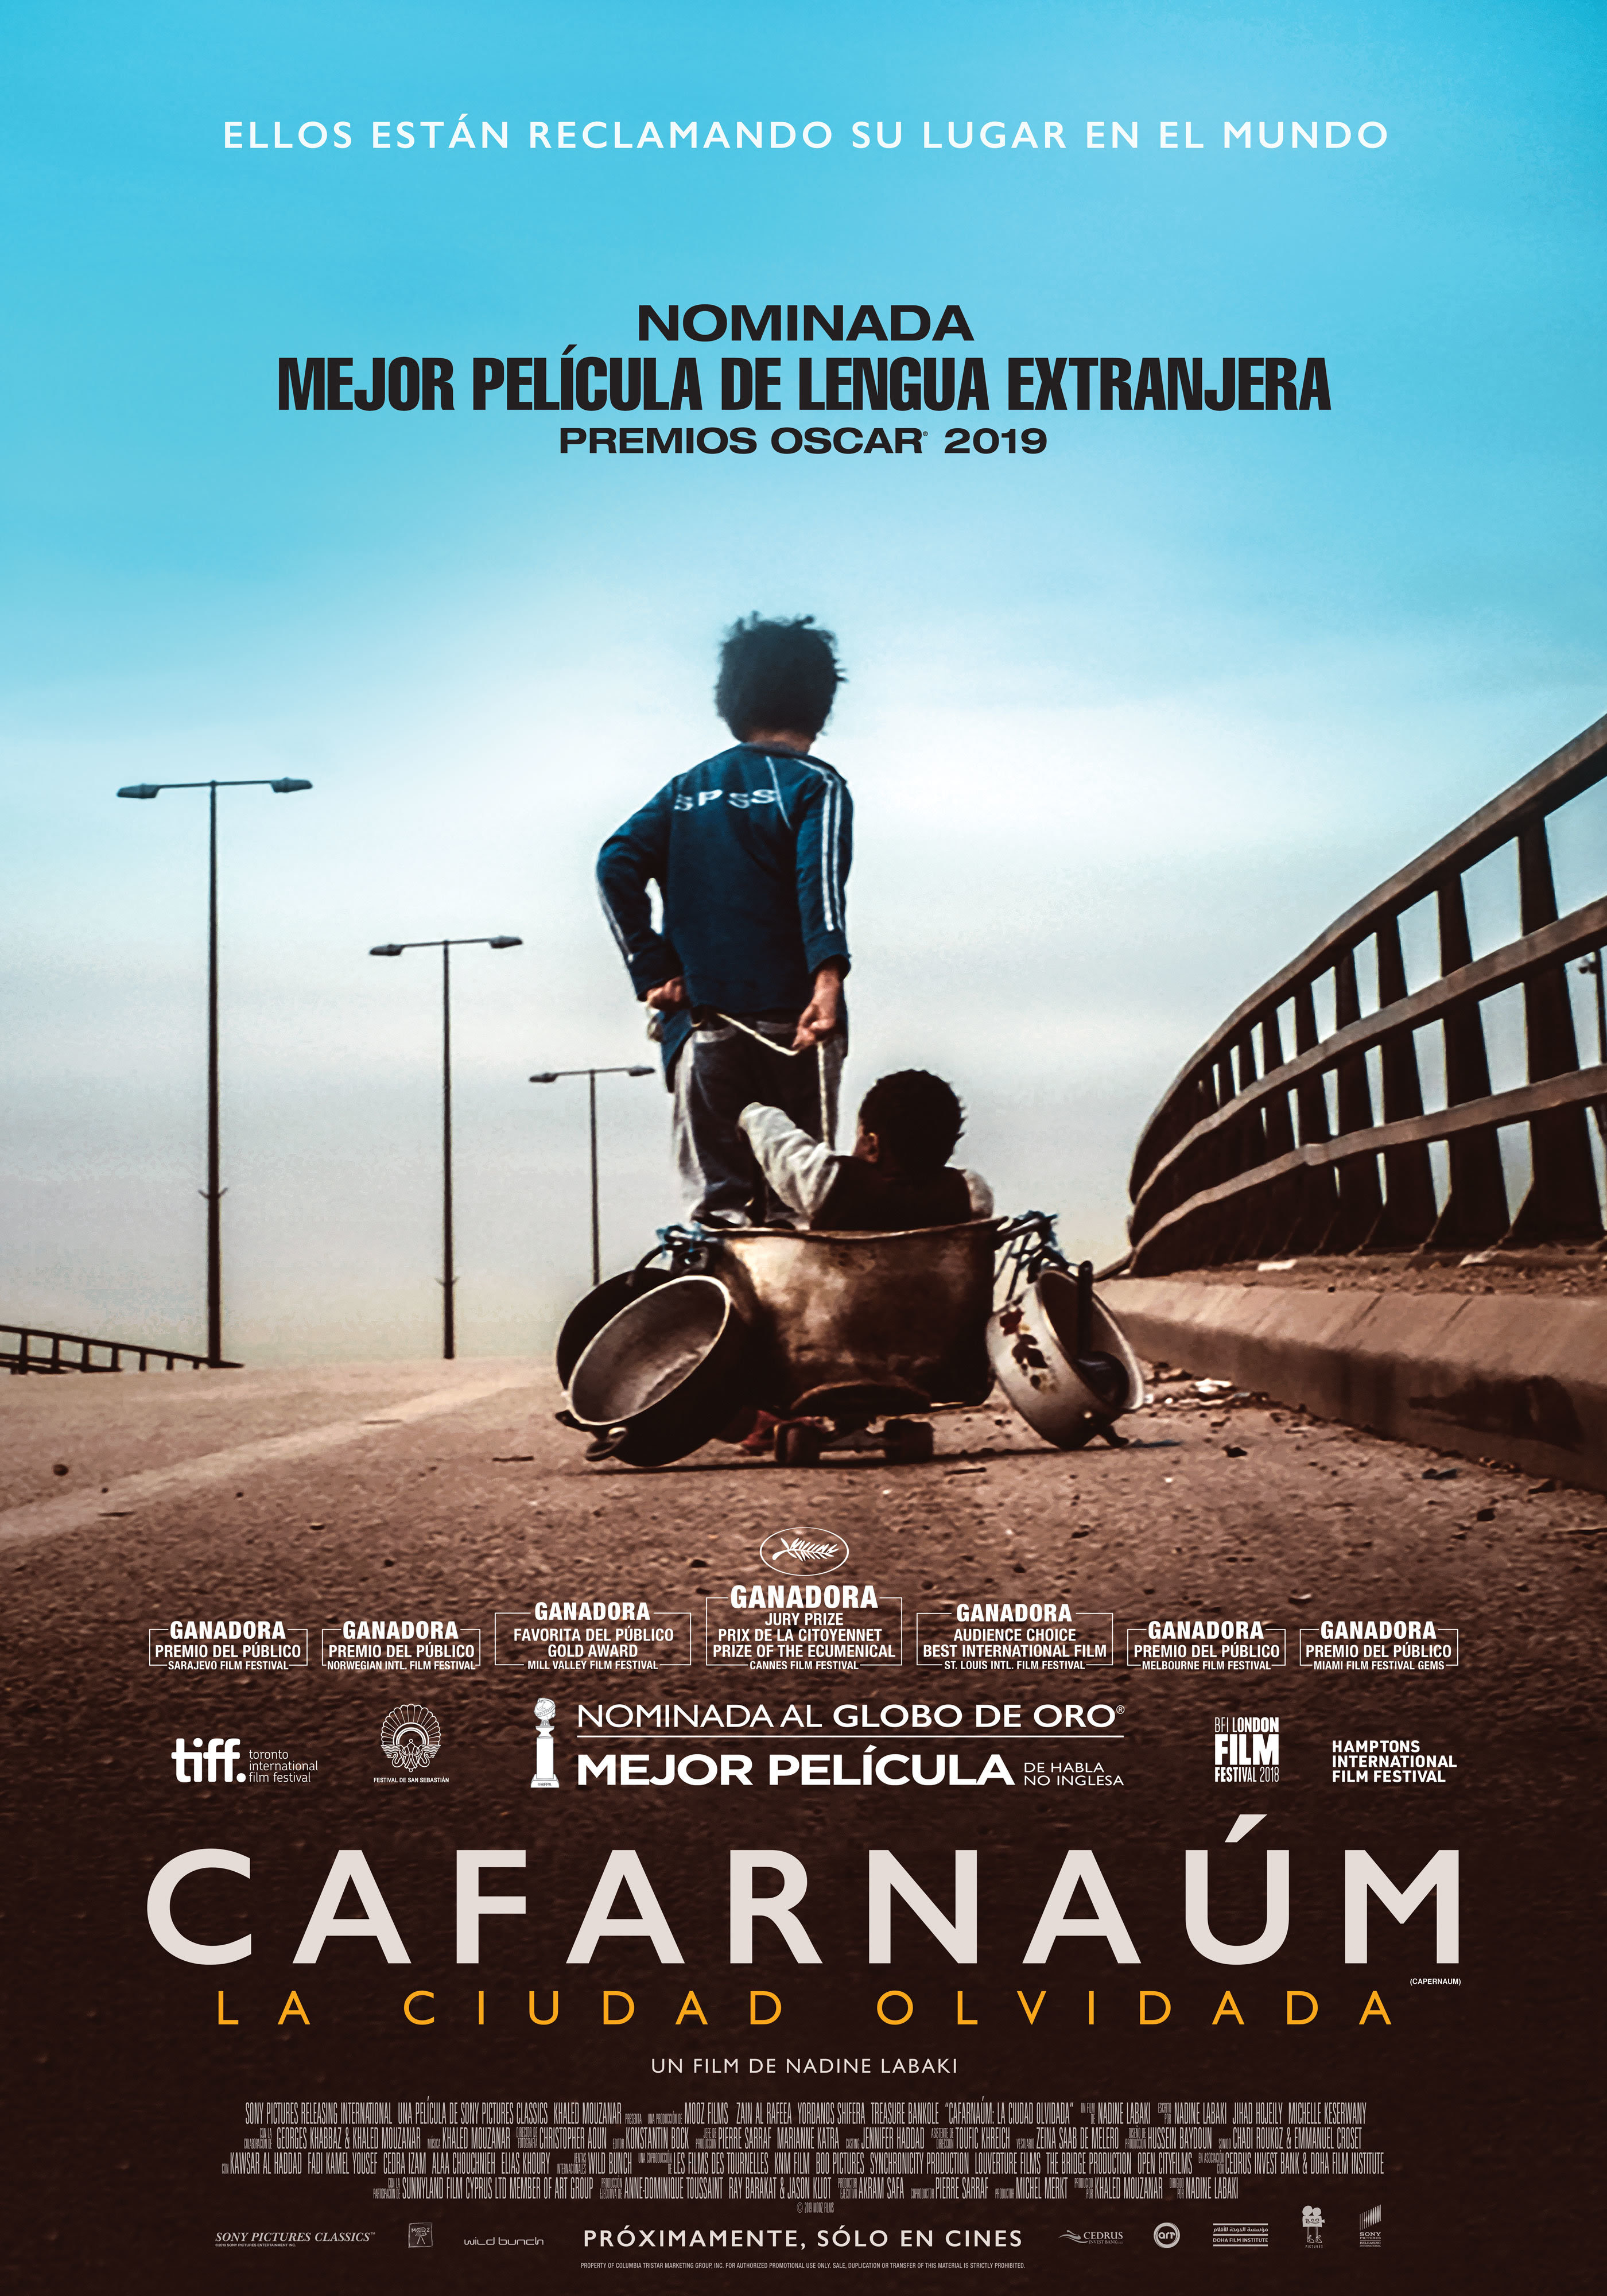 Cafarnaúm, nominada a mejor película de Lengua Extranjera